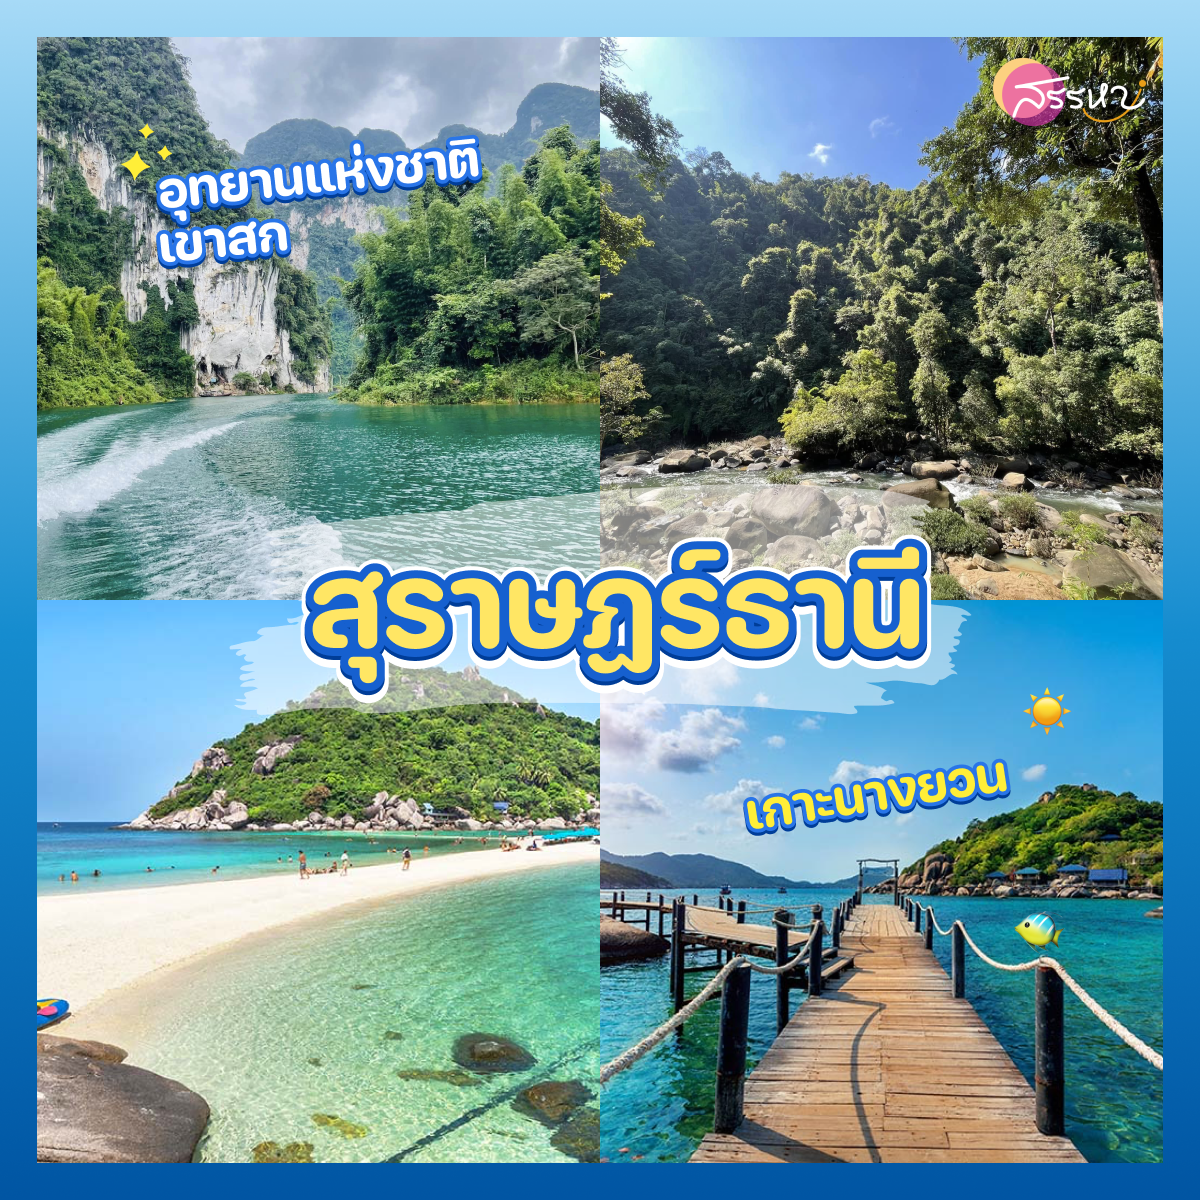 ปักหมุด 7 จังหวัด สถานที่ท่องเที่ยวในไทย ตามรอยคัลแลนกับพี่จอง ส่องธรรมชาติและอุทยาน